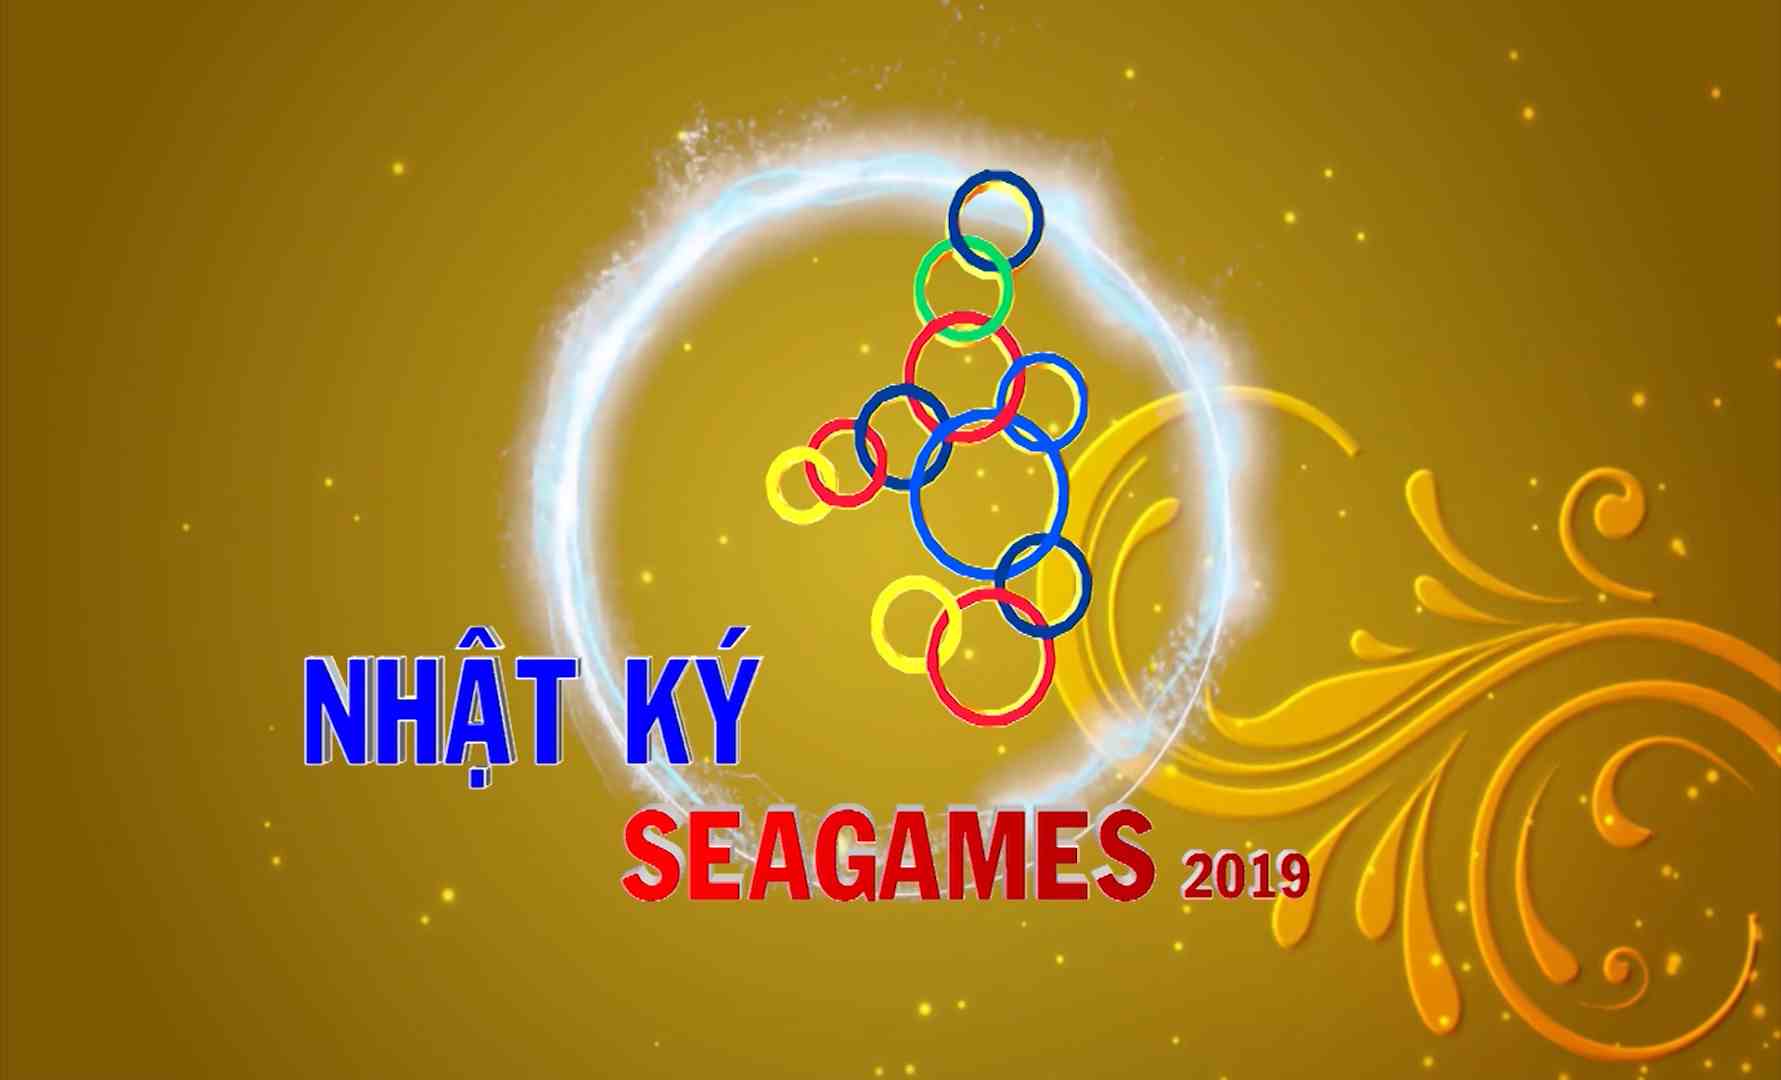 [Video] Nhật ký SEA Games 30 sáng (03-12-2019)